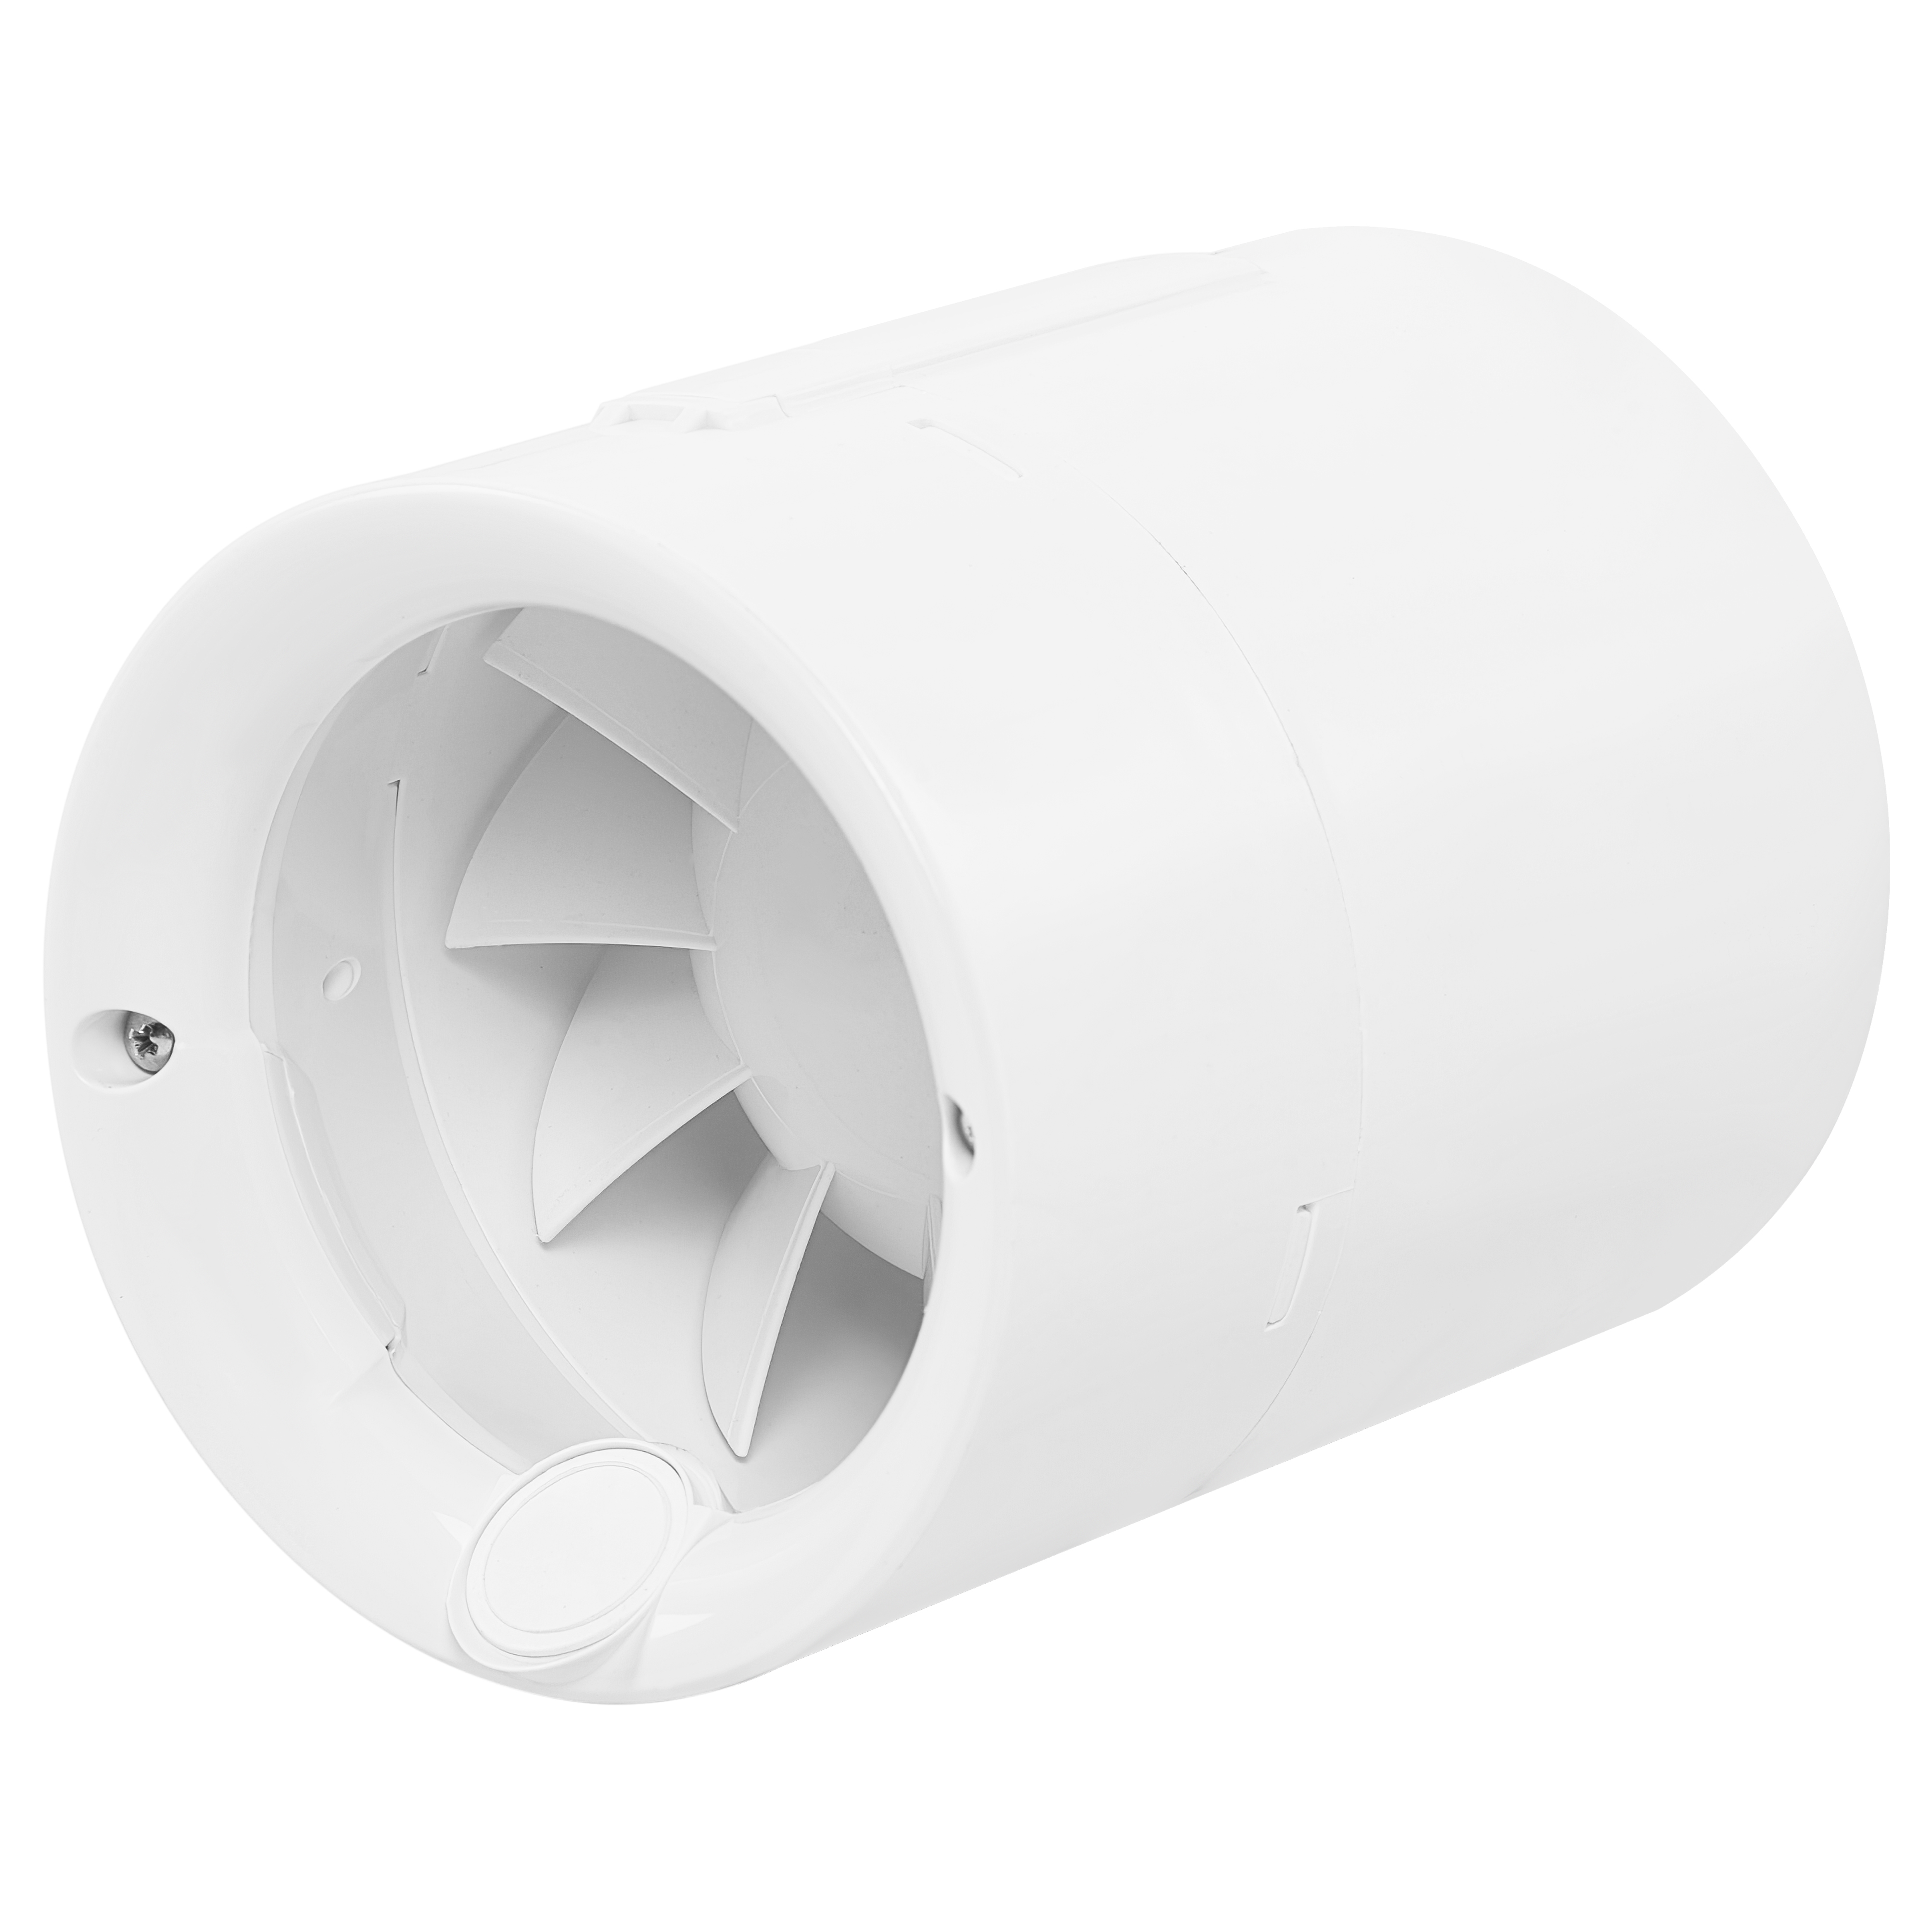 Характеристики канальный вентилятор Soler&Palau Silentub-100